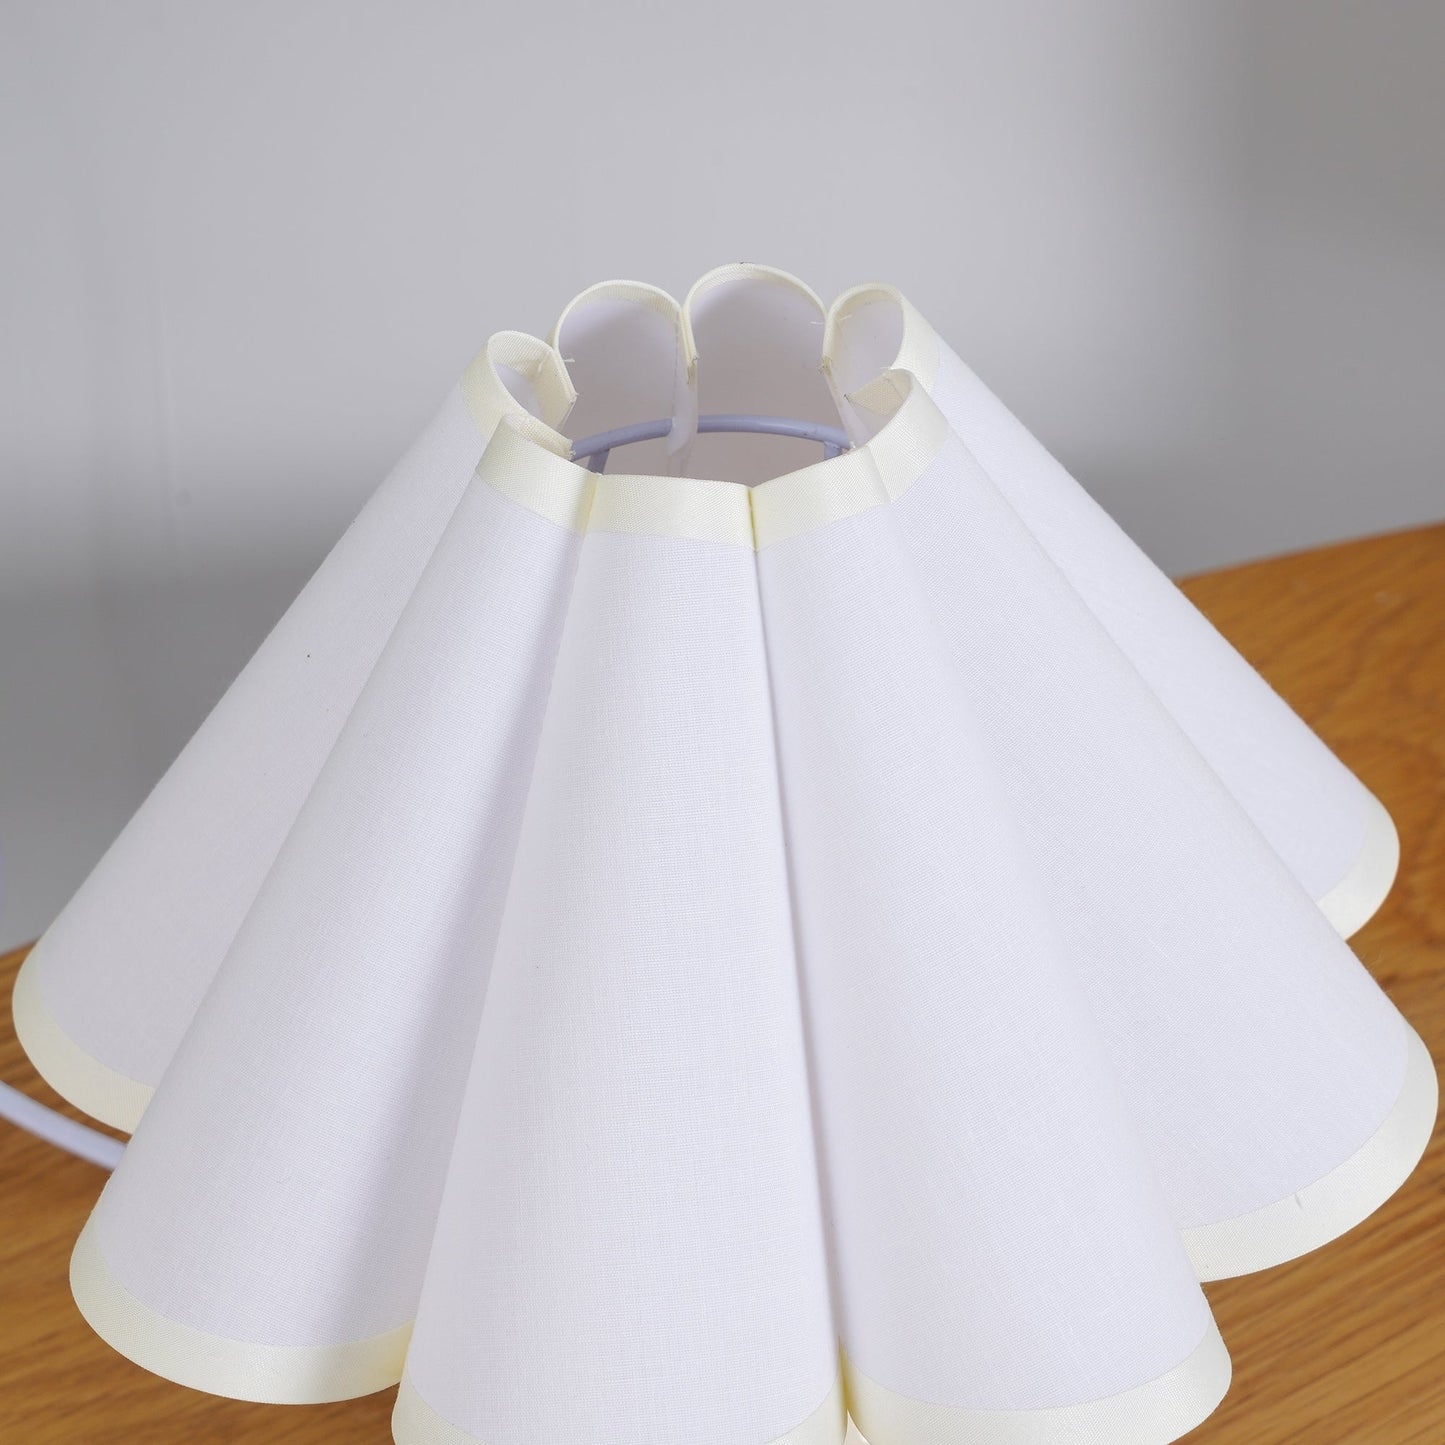 Ellie Pleat Table Lamp